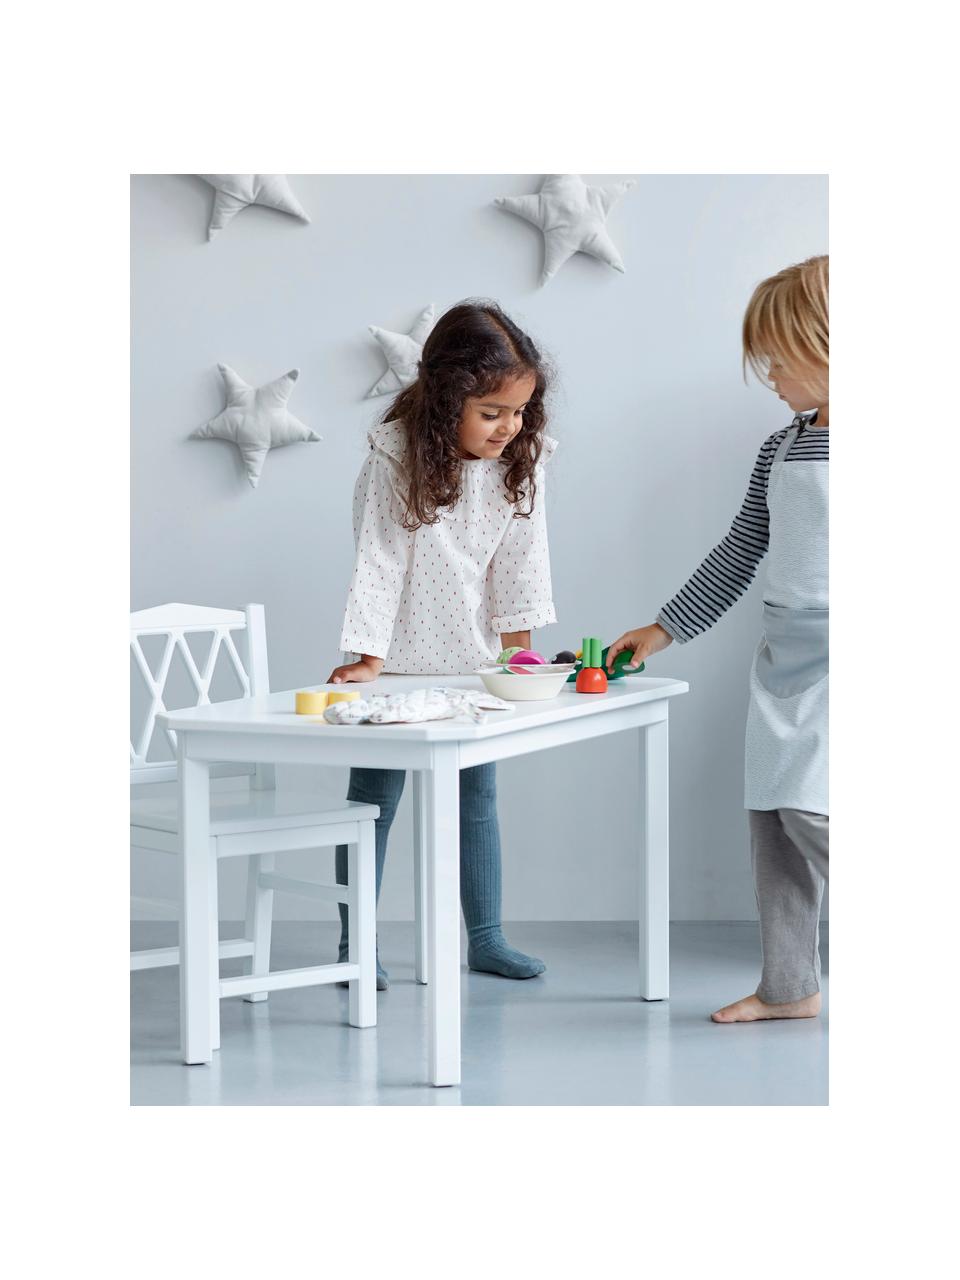 Dětský dřevěný stůl Harlequin, Březové dřevo, dřevovláknitá deska se střední hustotou (MDF), natřená barvou bez VOC, Březové dřevo, bíle lakované, Š 79 cm, V 47 cm